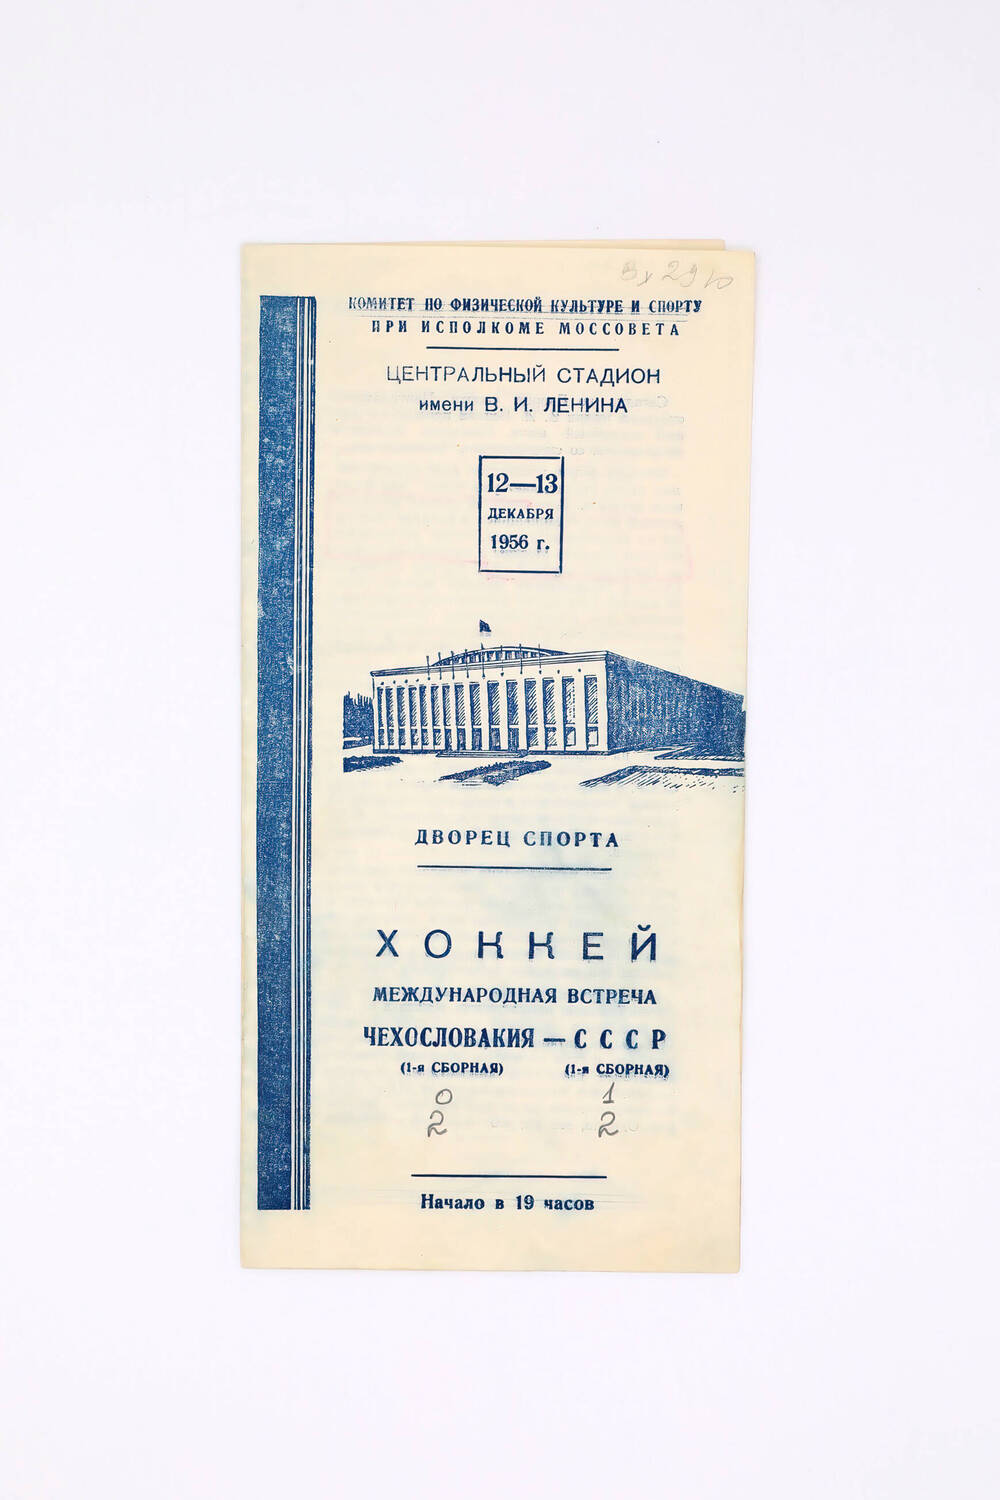 Программа матча хоккейного Чехословакия-СССР 12-13 декабря 1956 г.